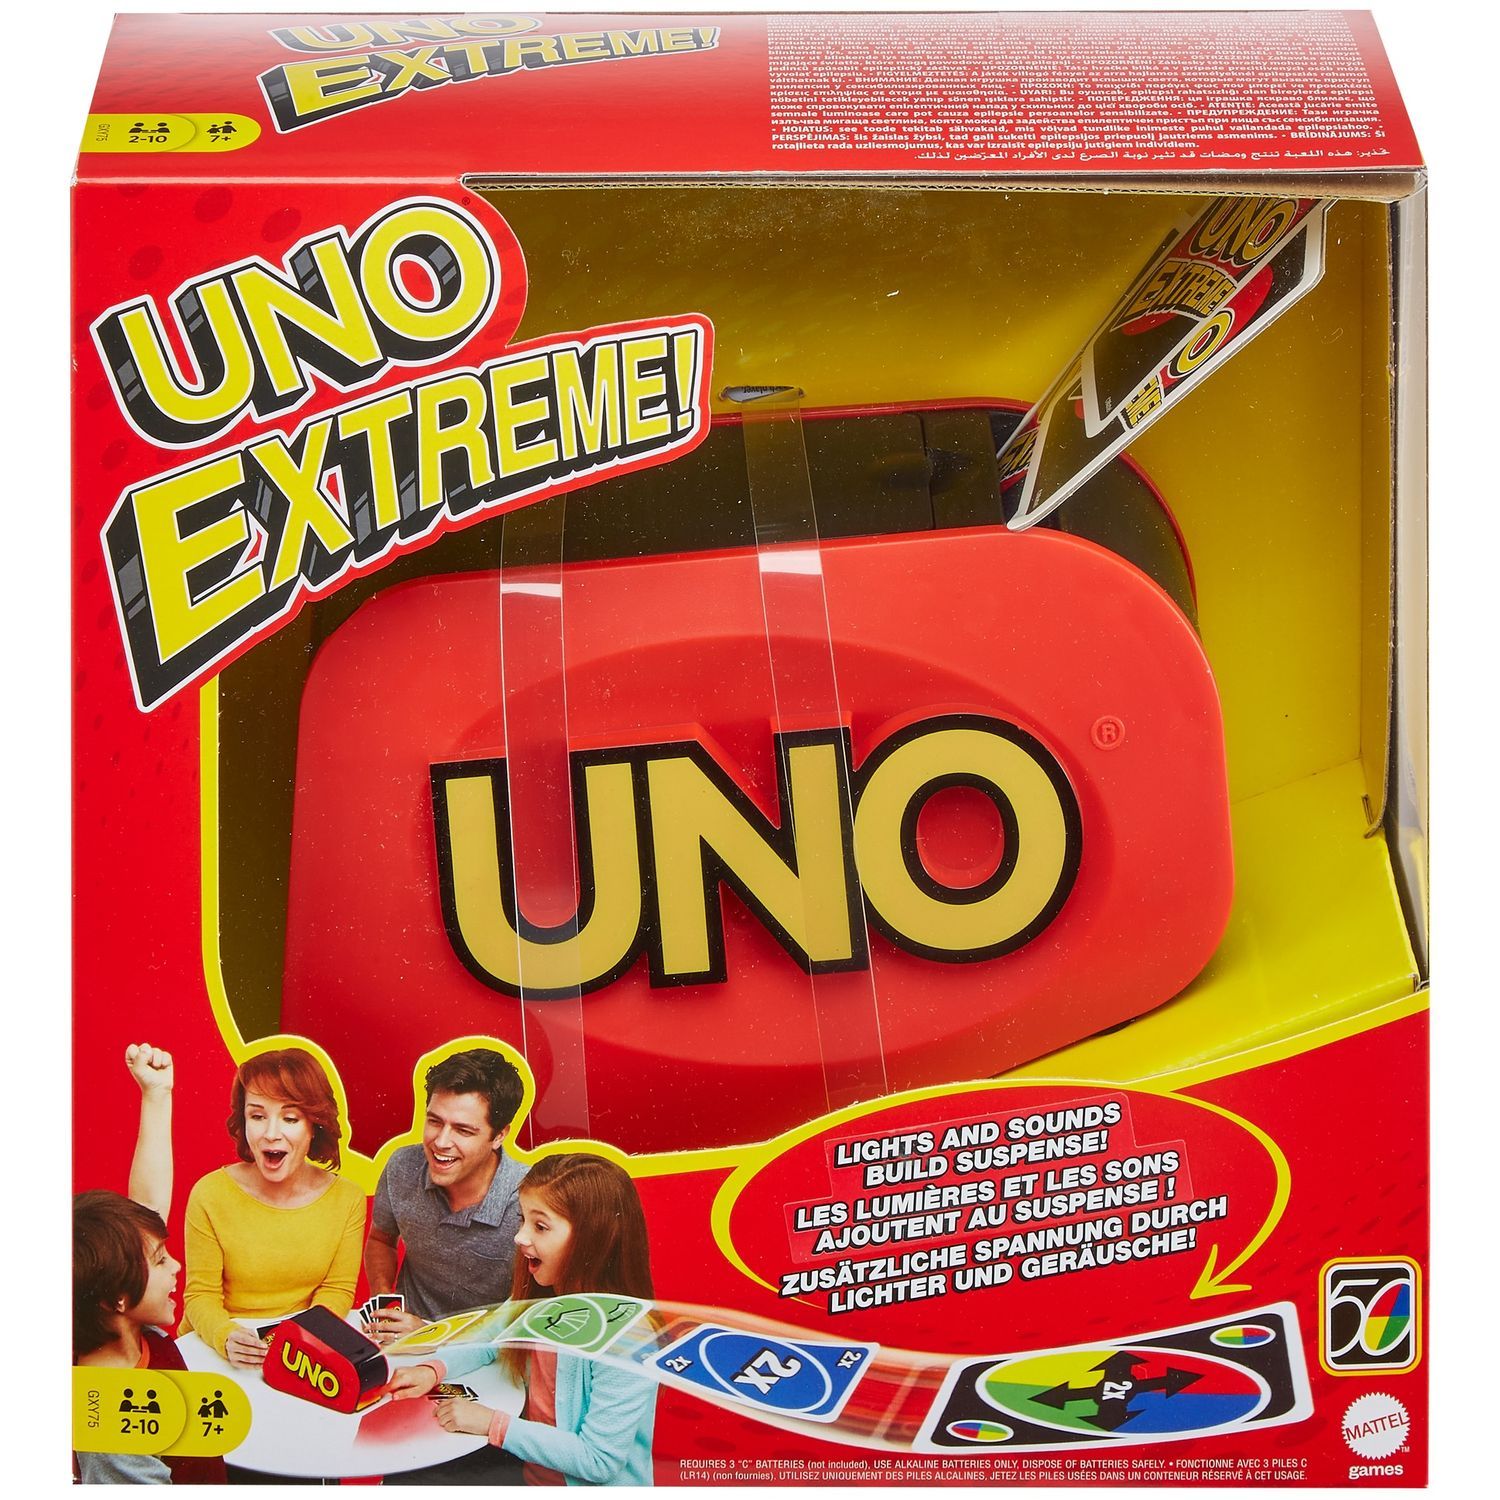 Les meilleurs prix aujourd'hui pour Uno Extreme - TableTopFinder